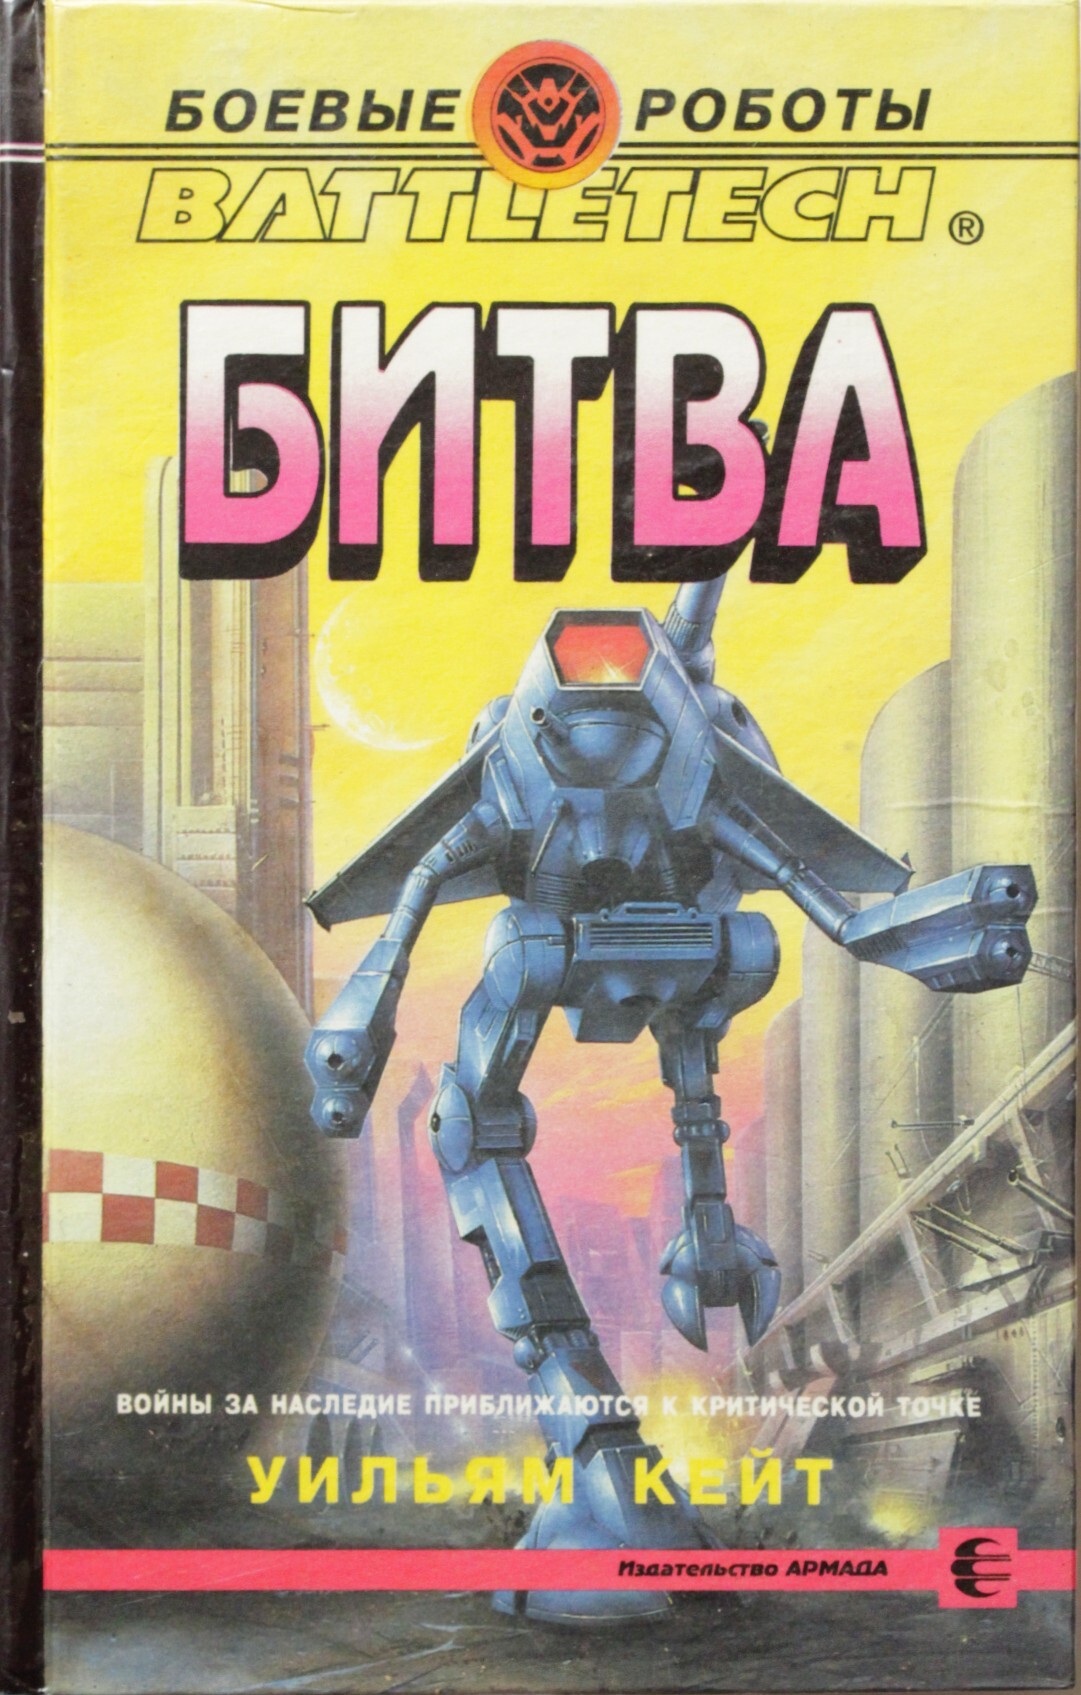 Боевые роботы книги. Уильям Кейт битва. Боевые роботы битва книга. Боевые роботы Уильям Кейт. Робот с книгой.